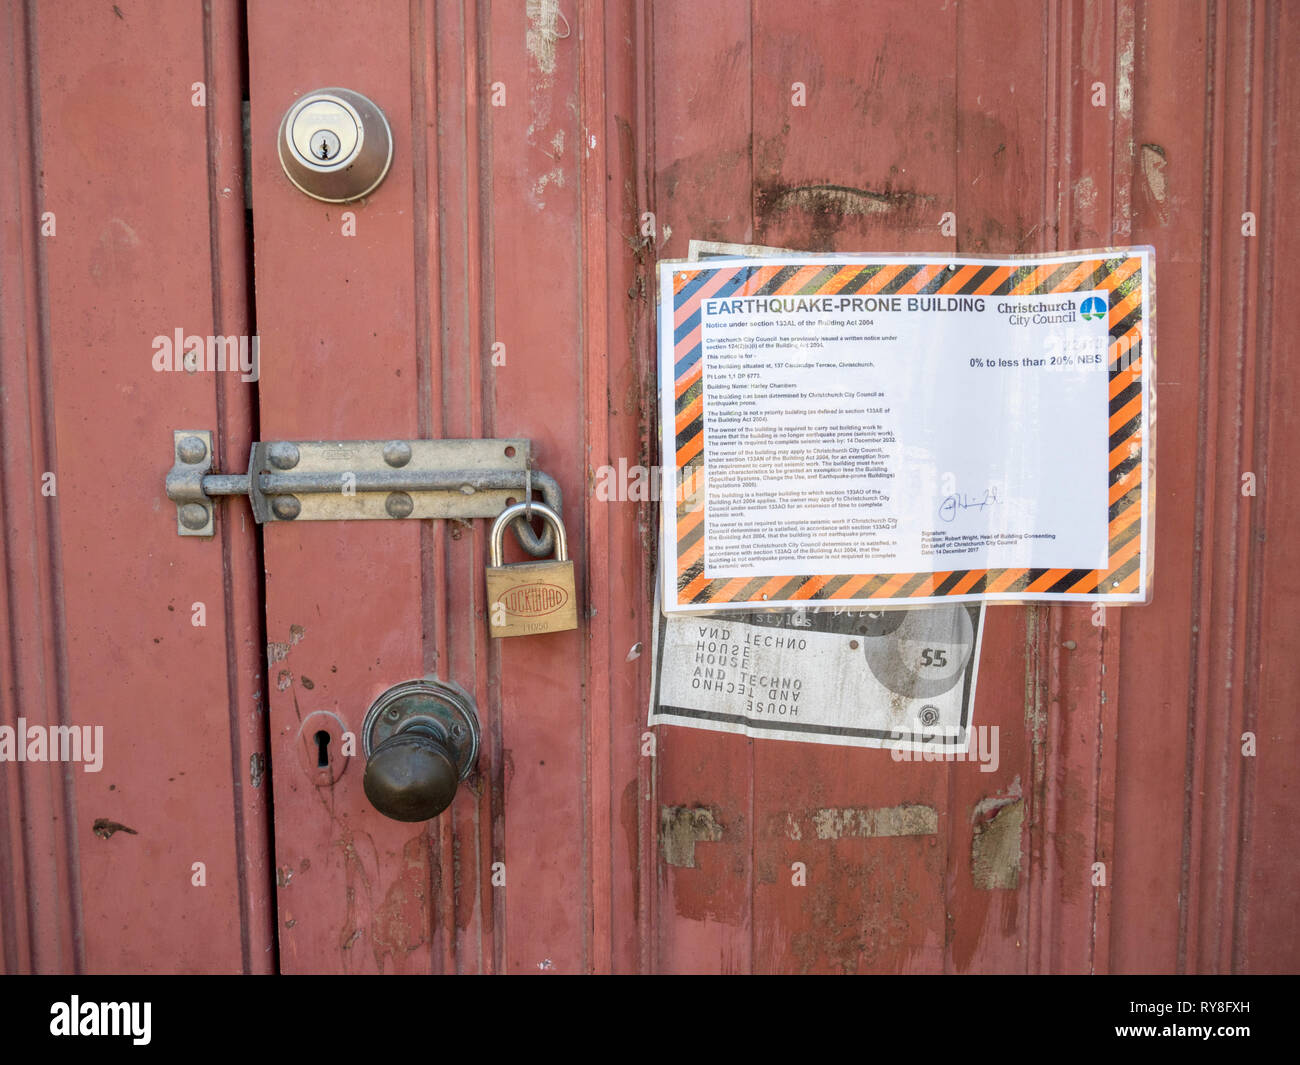 Un letrero en la puerta de un antiguo edificio en Christchurch New Zeaand declararlo un terremoto propenso edificio y necesita reparación. Foto de stock